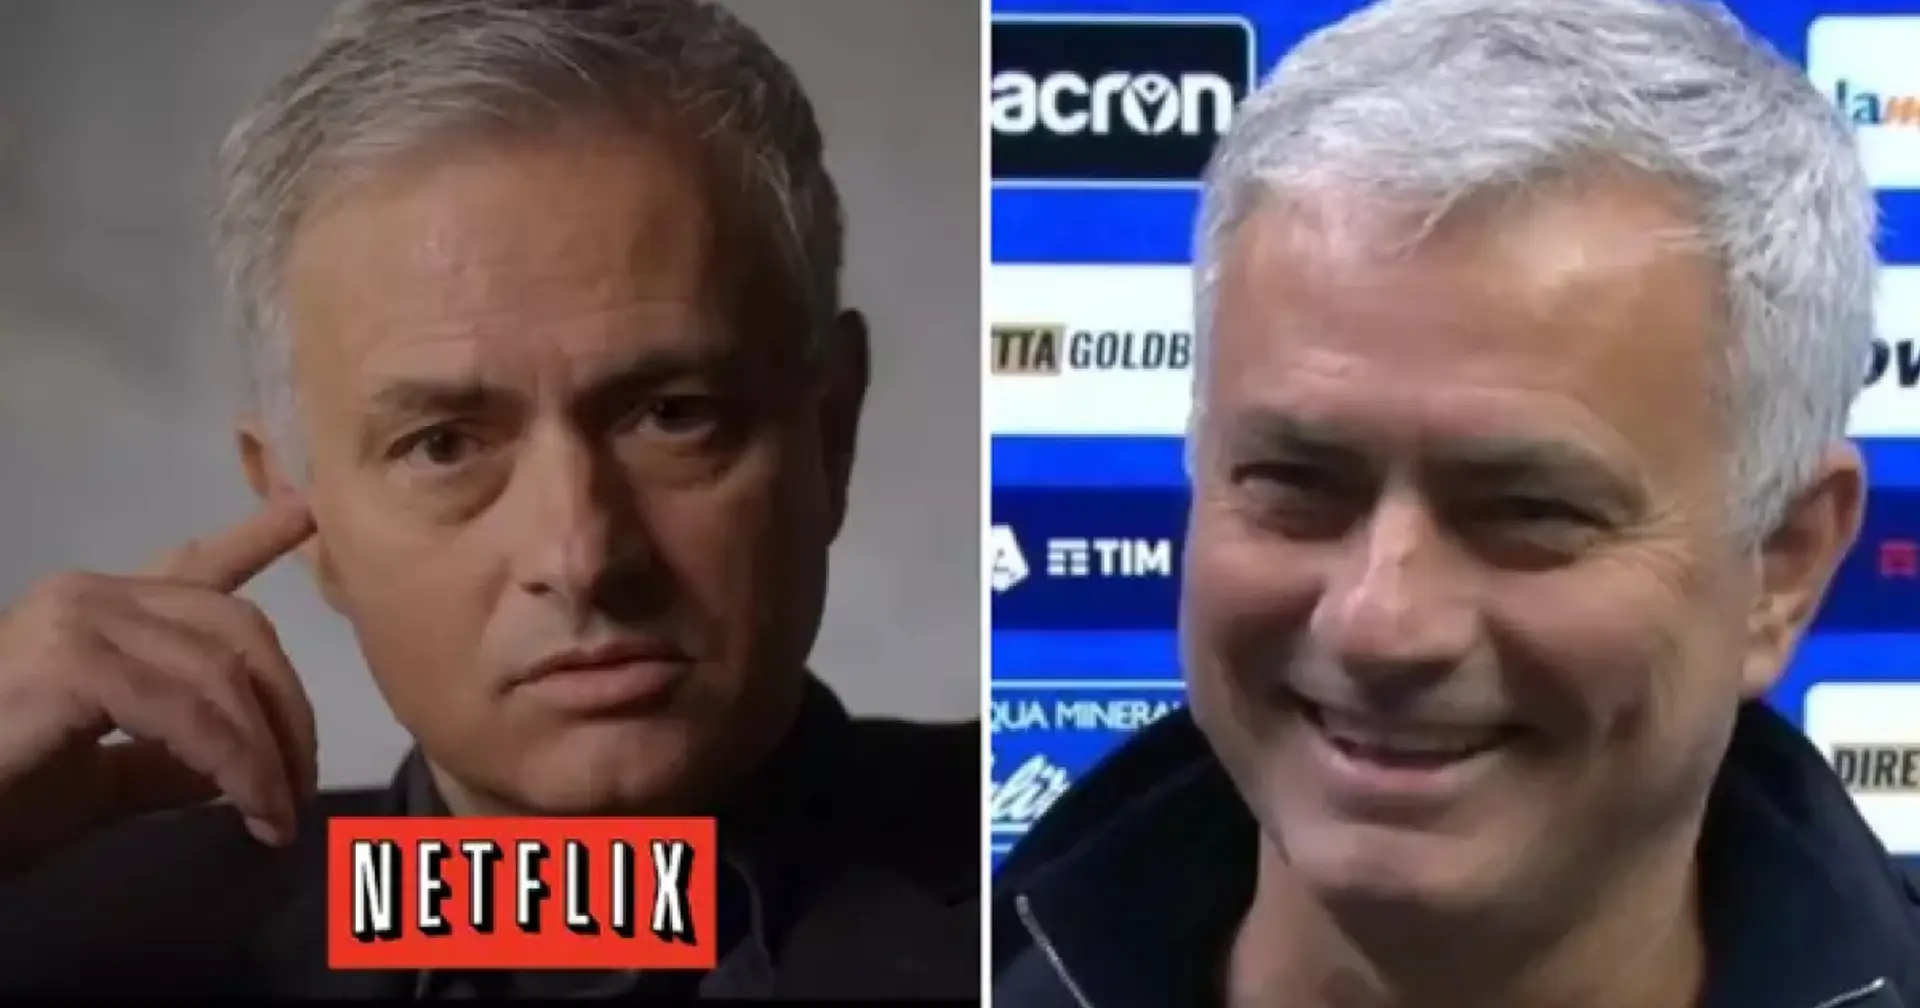 Jose Mourinho verrät Details zu seiner neuen Netflix-Serie und erklärt, warum ihn alle für einen "Vollidioten" halten werden